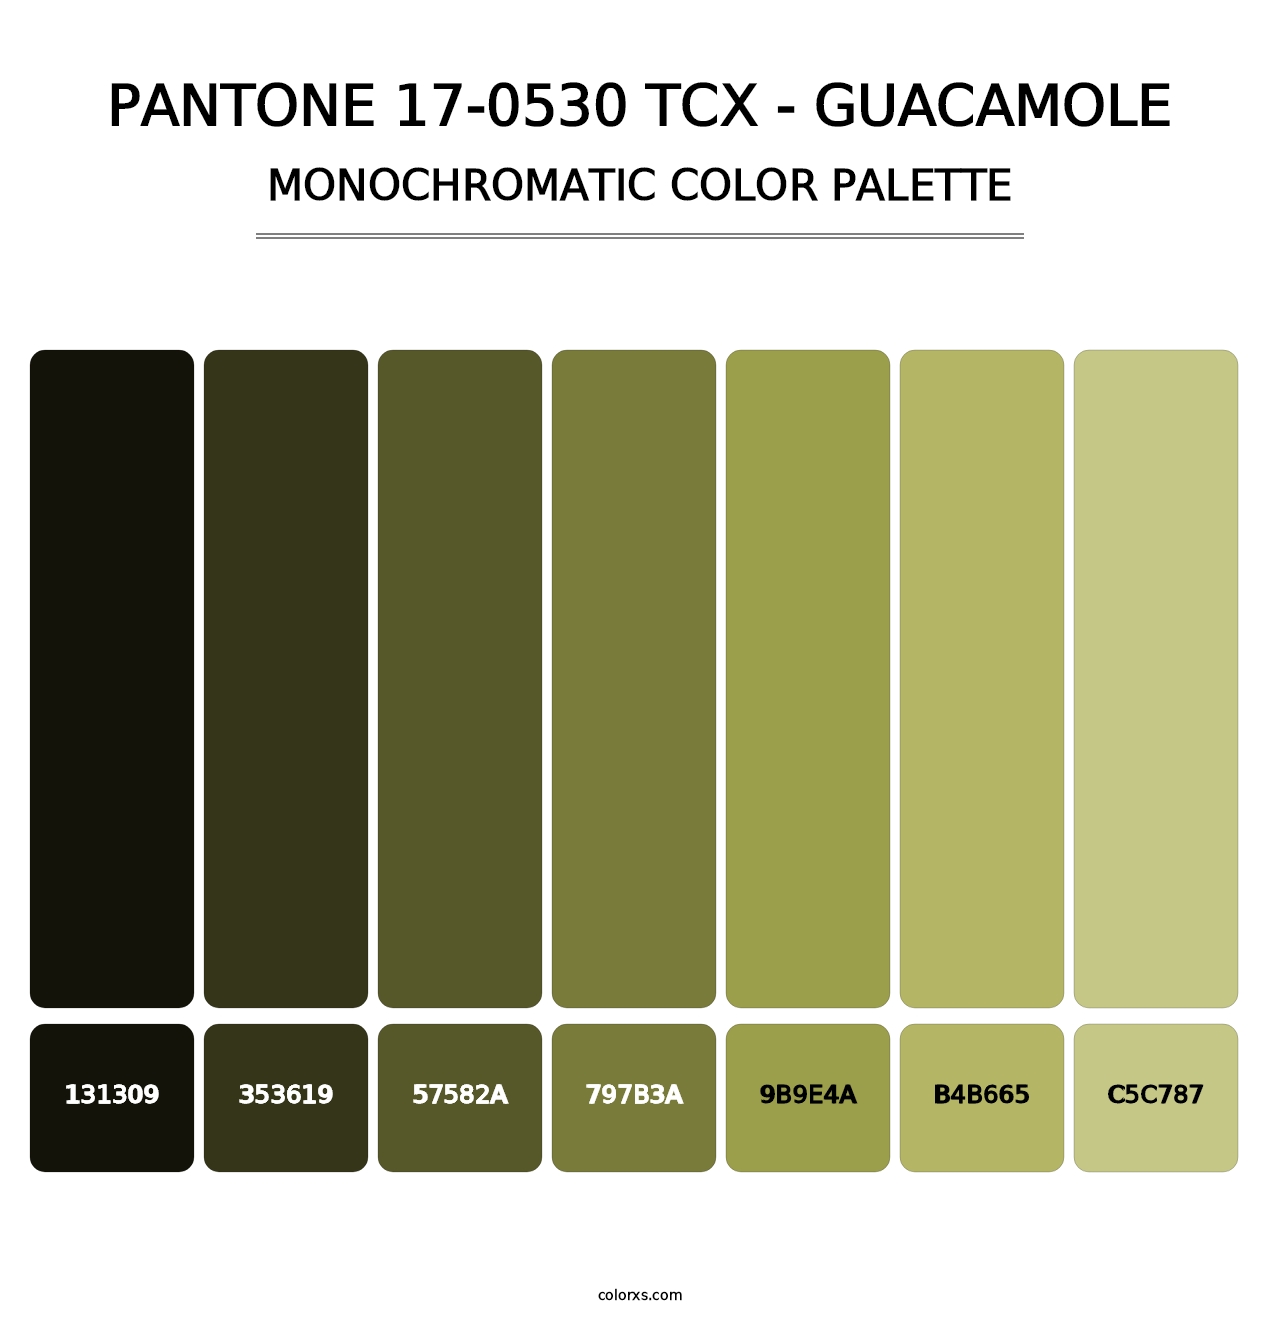 PANTONE 17-0530 TCX - Guacamole - Monochromatic Color Palette